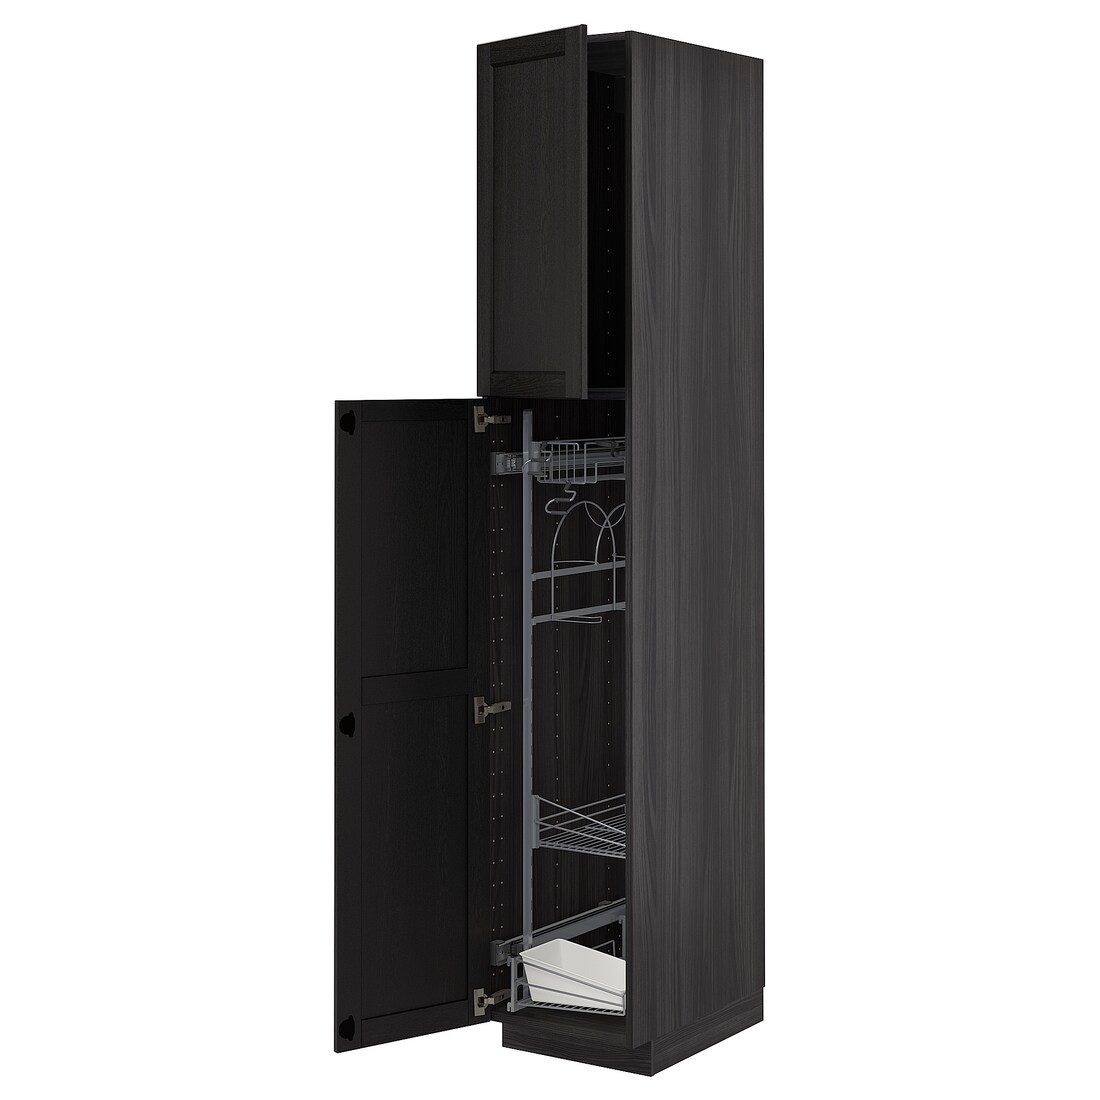 METOD МЕТОД Высокий шкаф с отделением для аксессуаров для уборки, черный / Lerhyttan черная морилка, 40x60x220 см